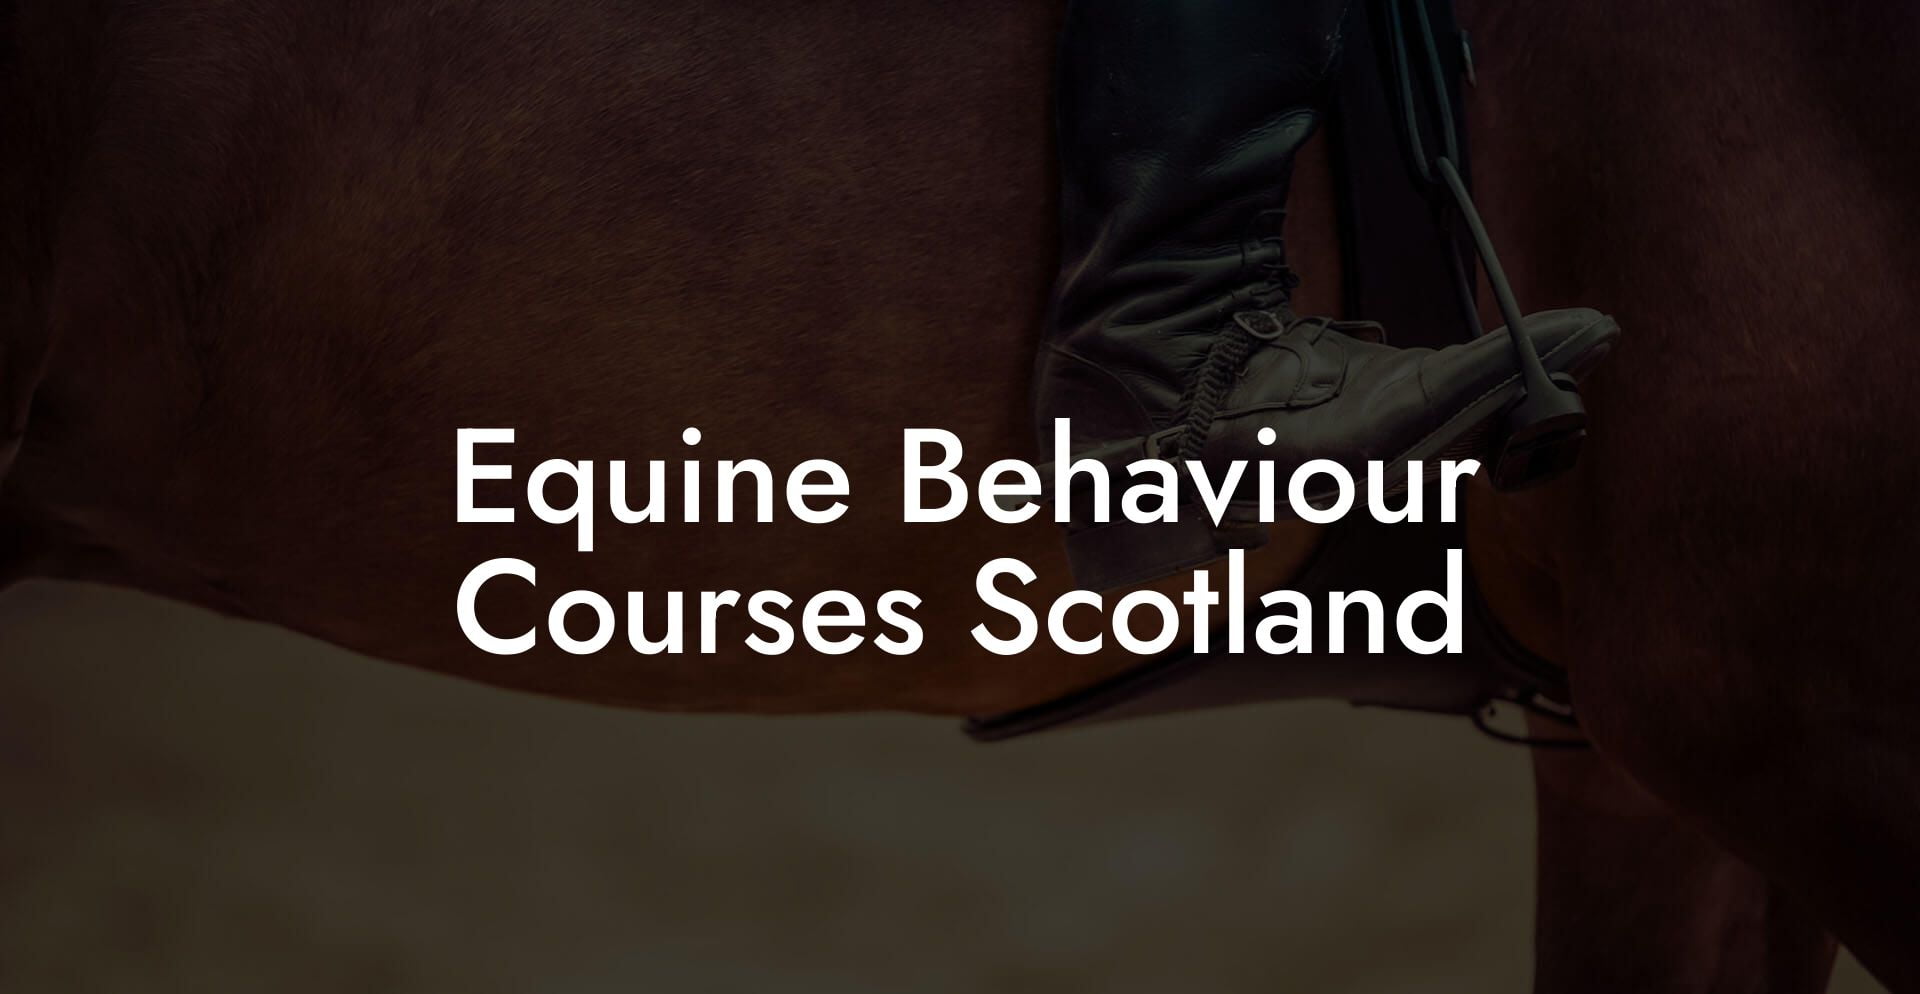 Equine Behaviour Courses Scotland